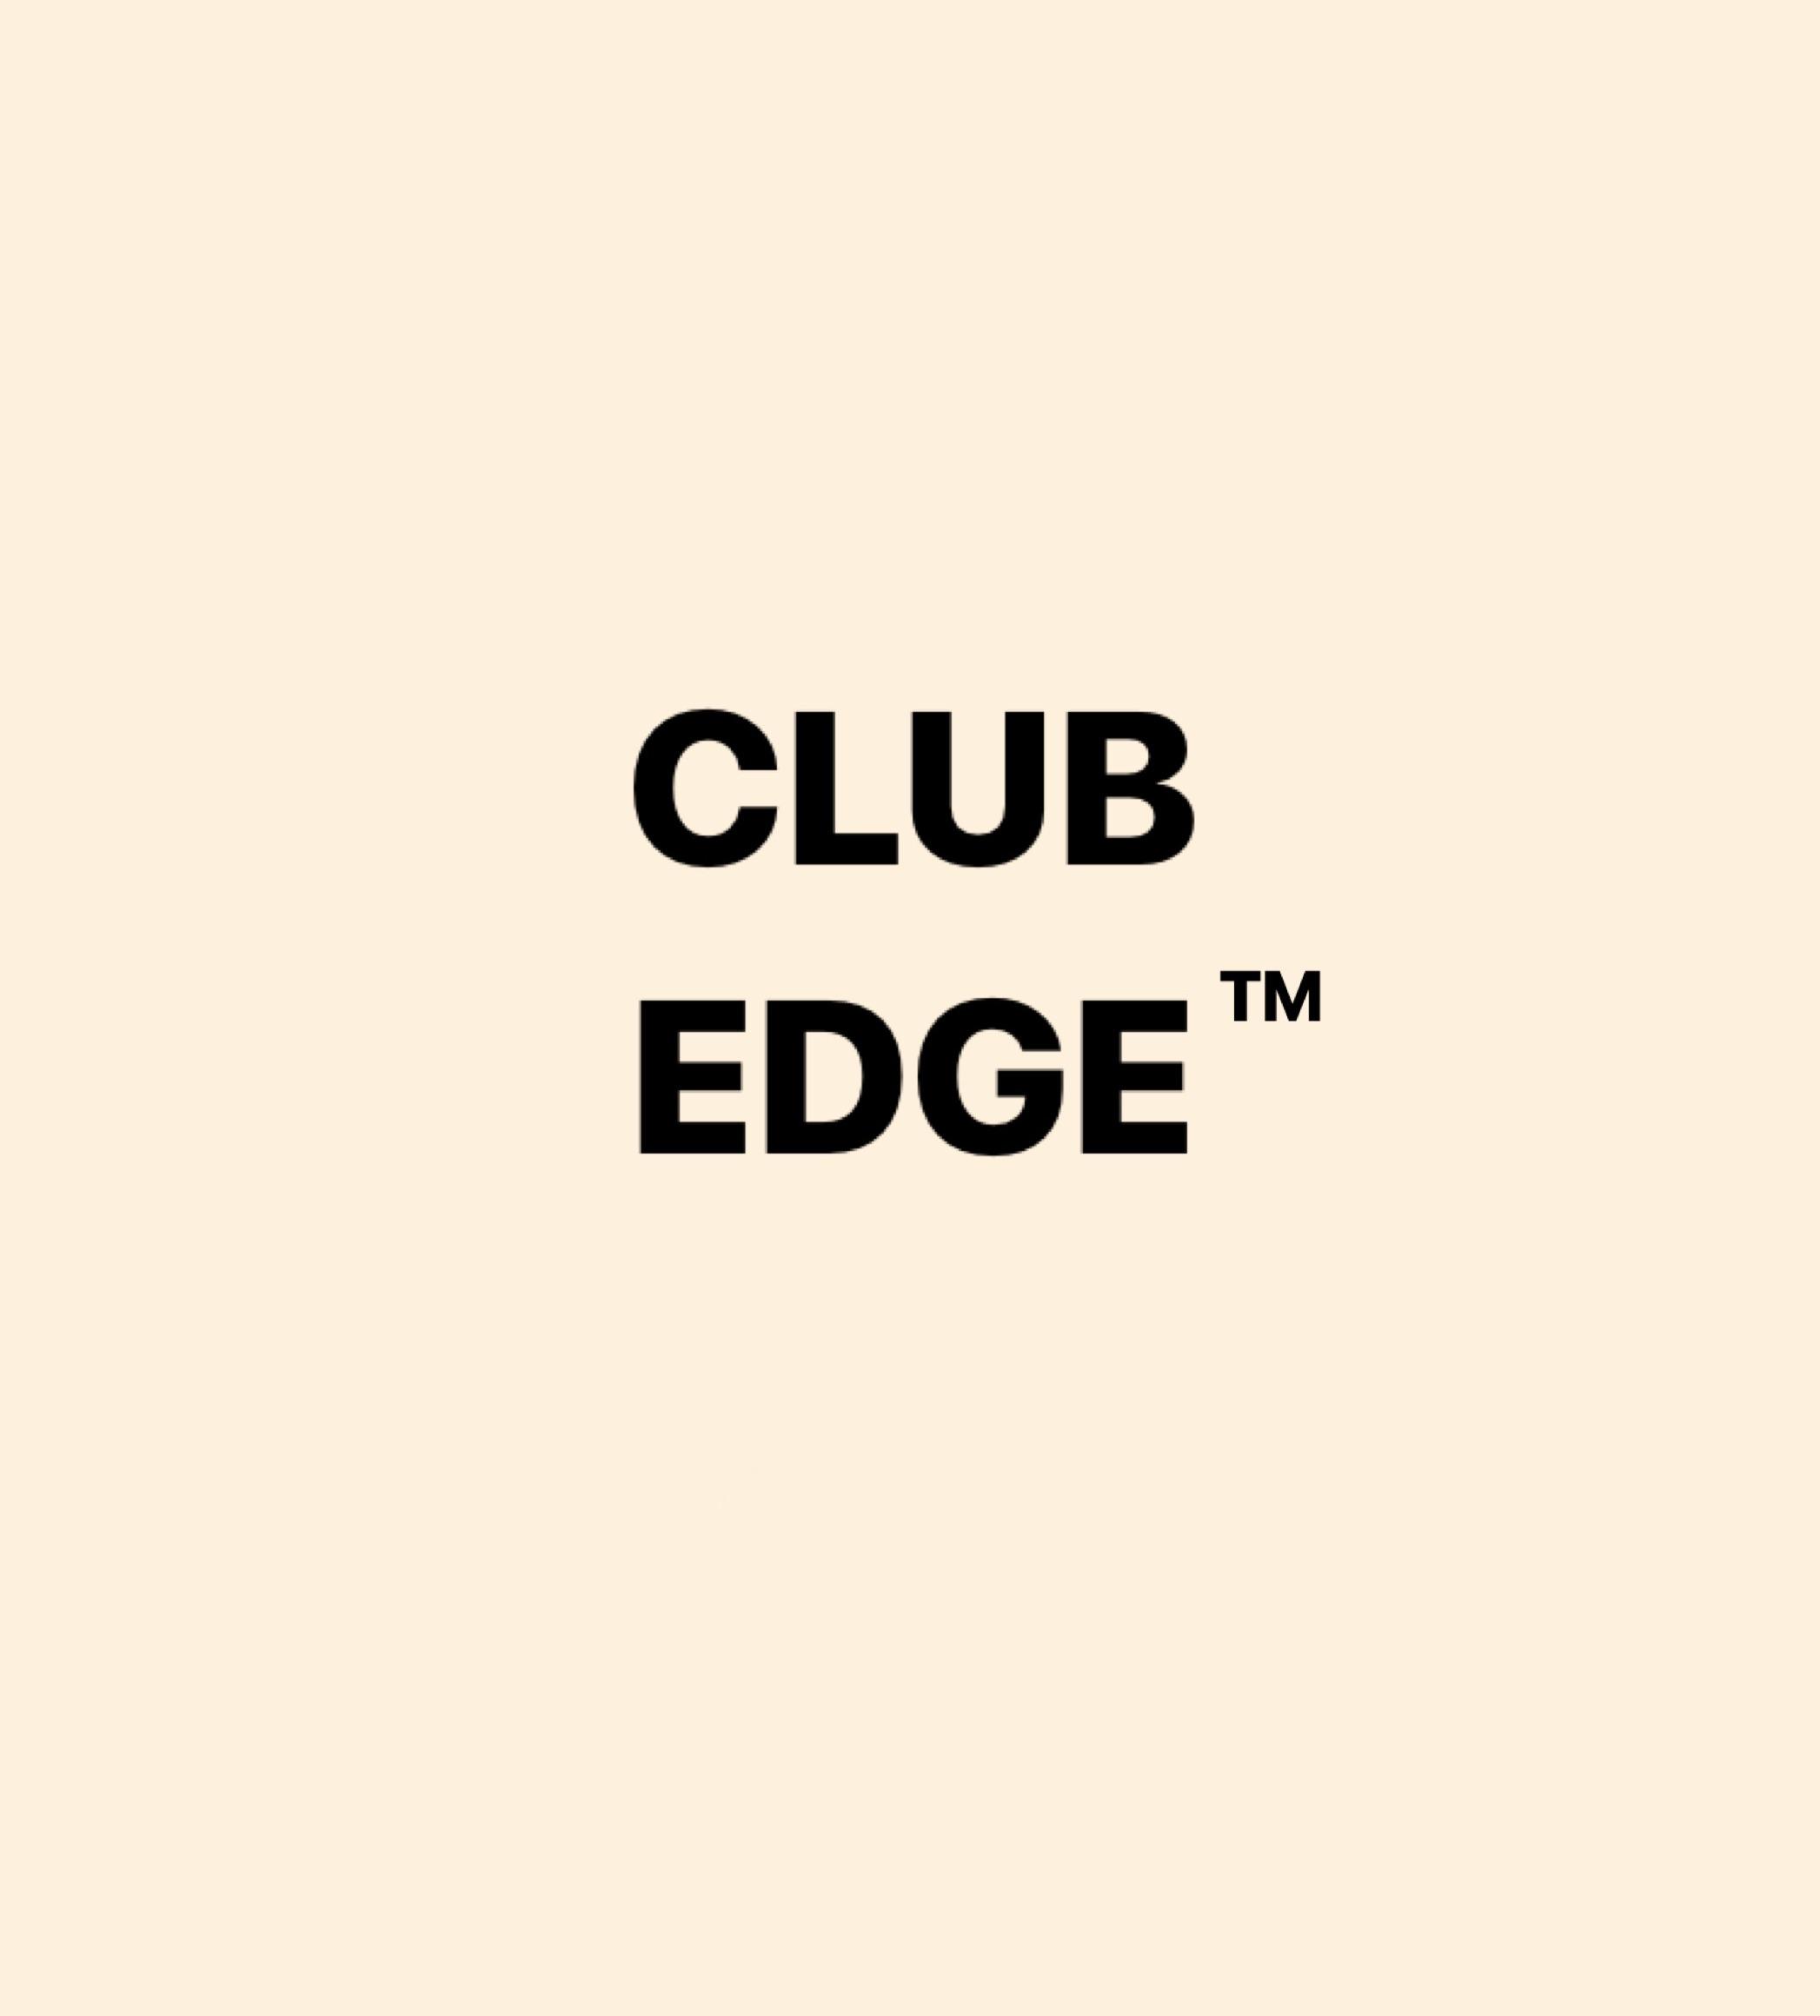 Club Edge ™